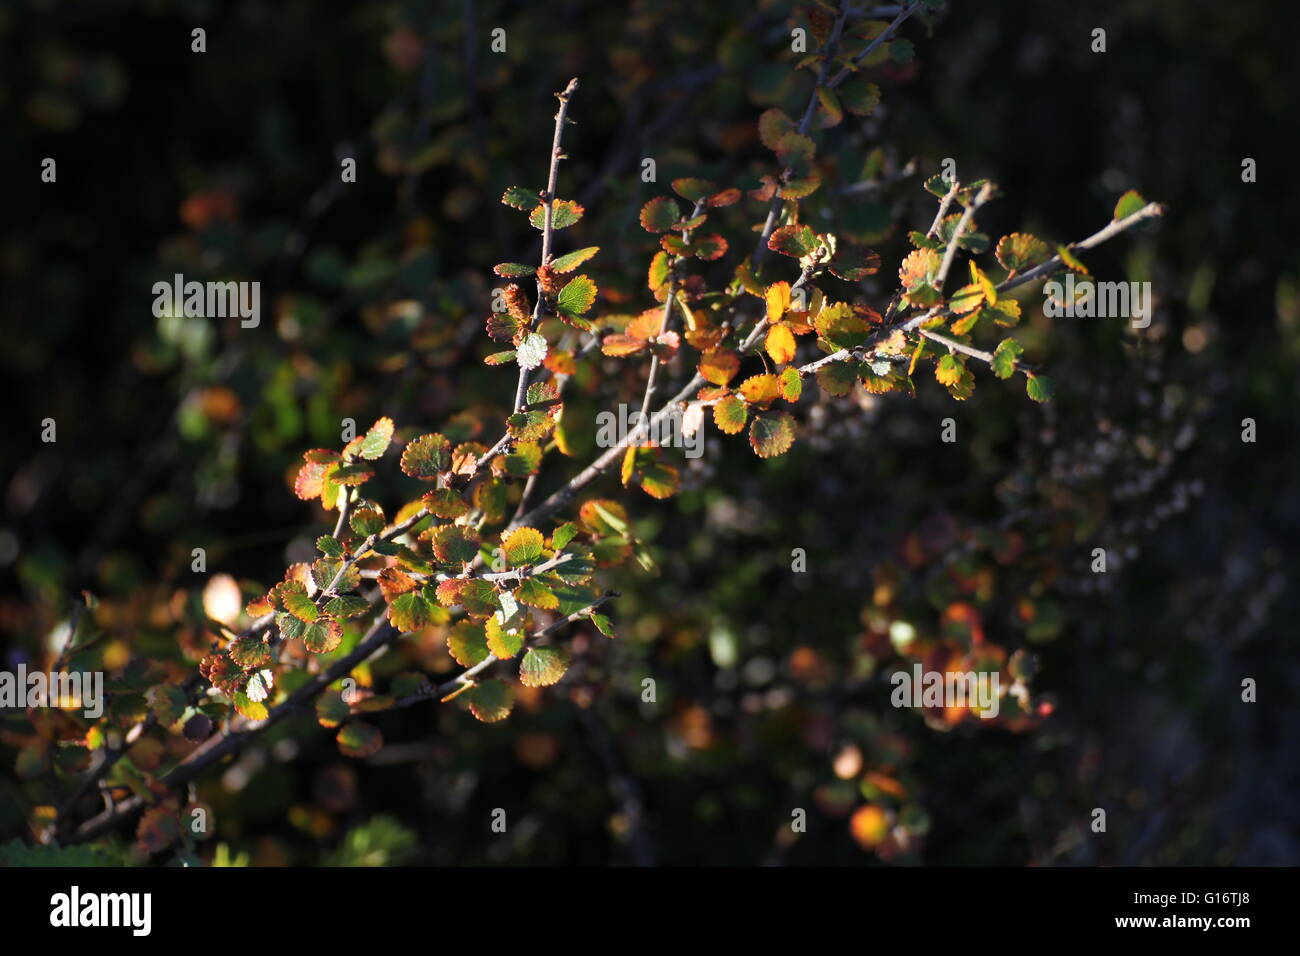 Sucursal del enano abedul (Betula nana), una especie de abedul sólo crece como arbusto enano en el norte de Europa. Foto de stock